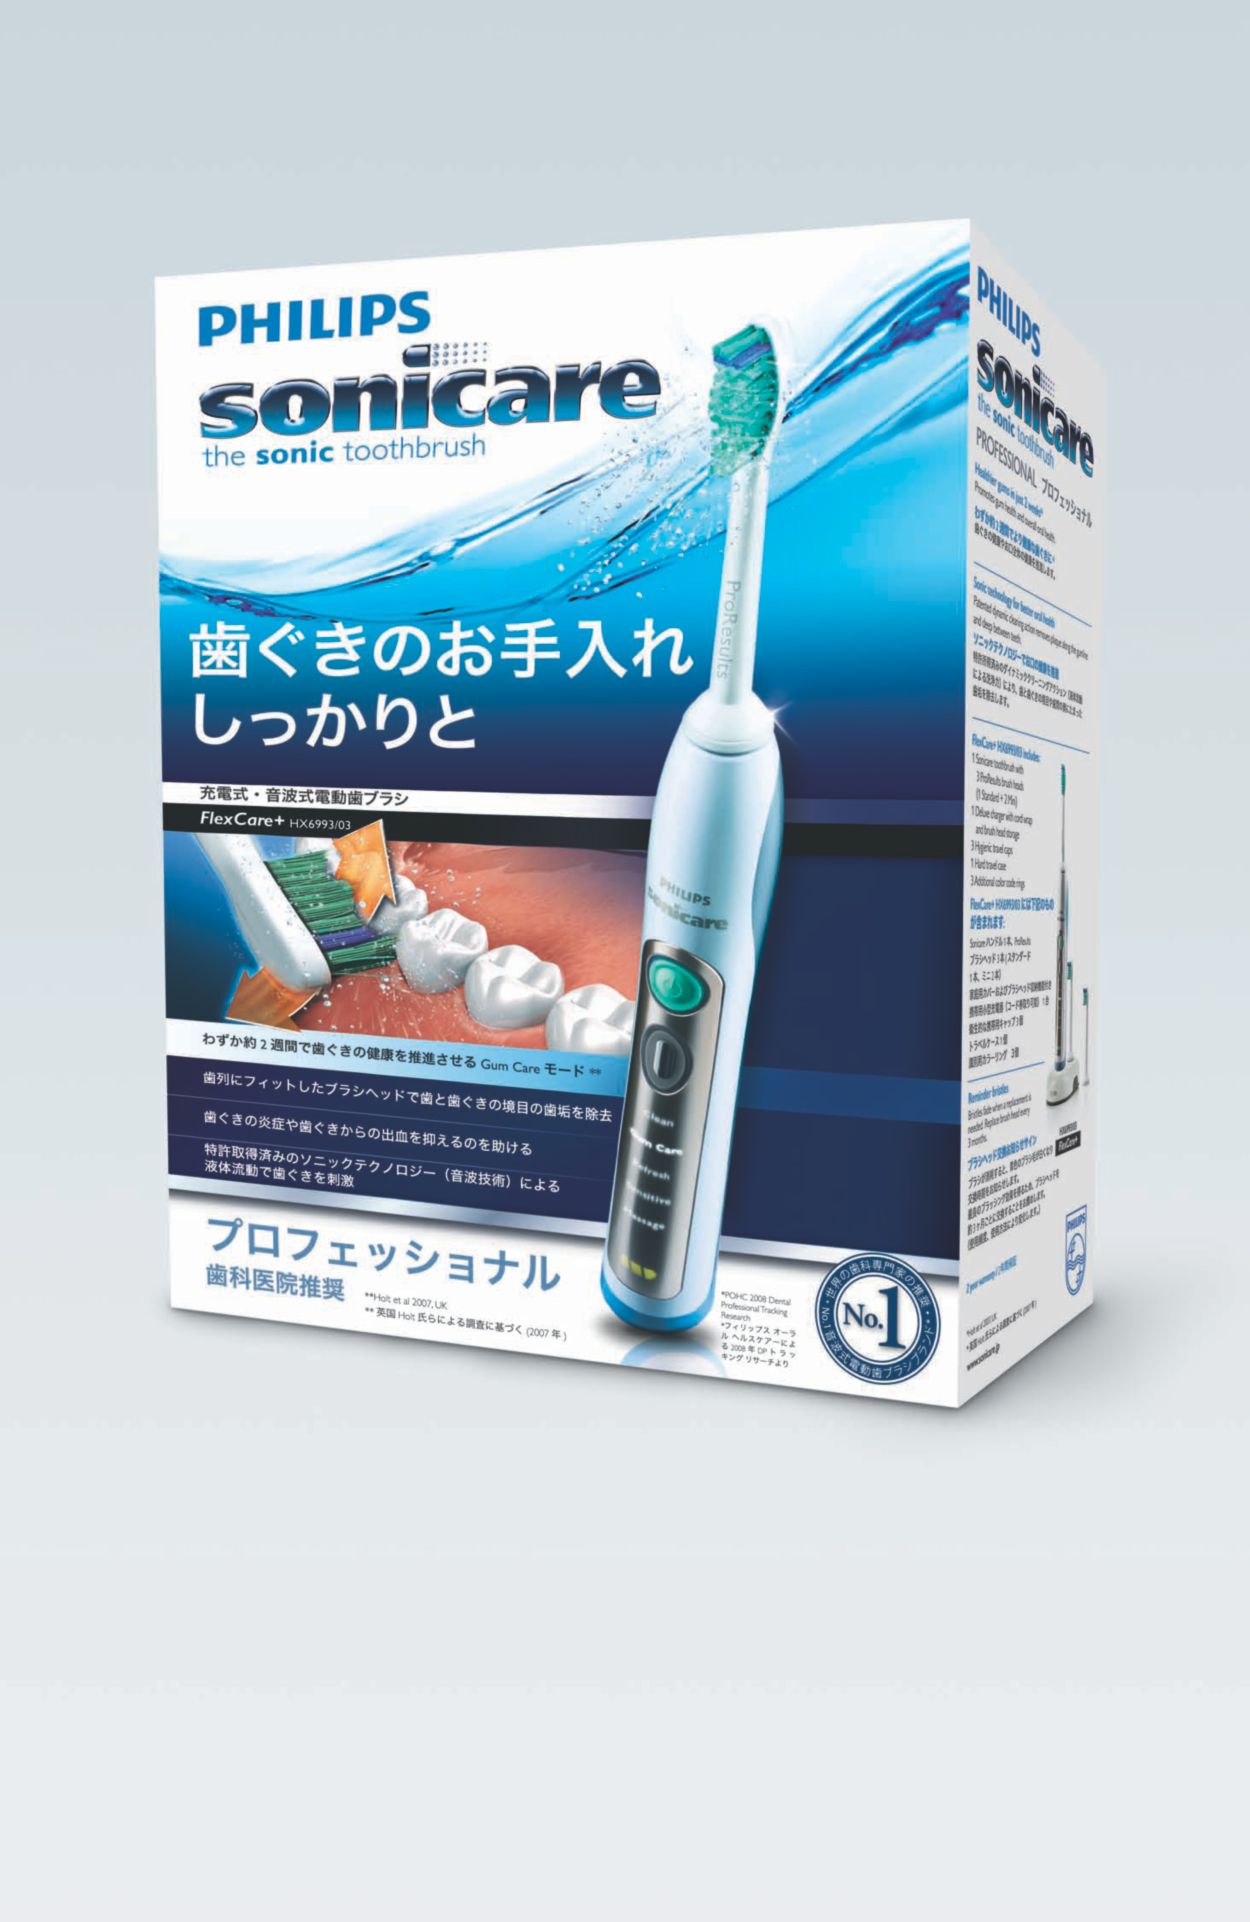 ソニックケアー 音波式電動歯ブラシ HX6950 PHILIPS sonicare - 美容、健康